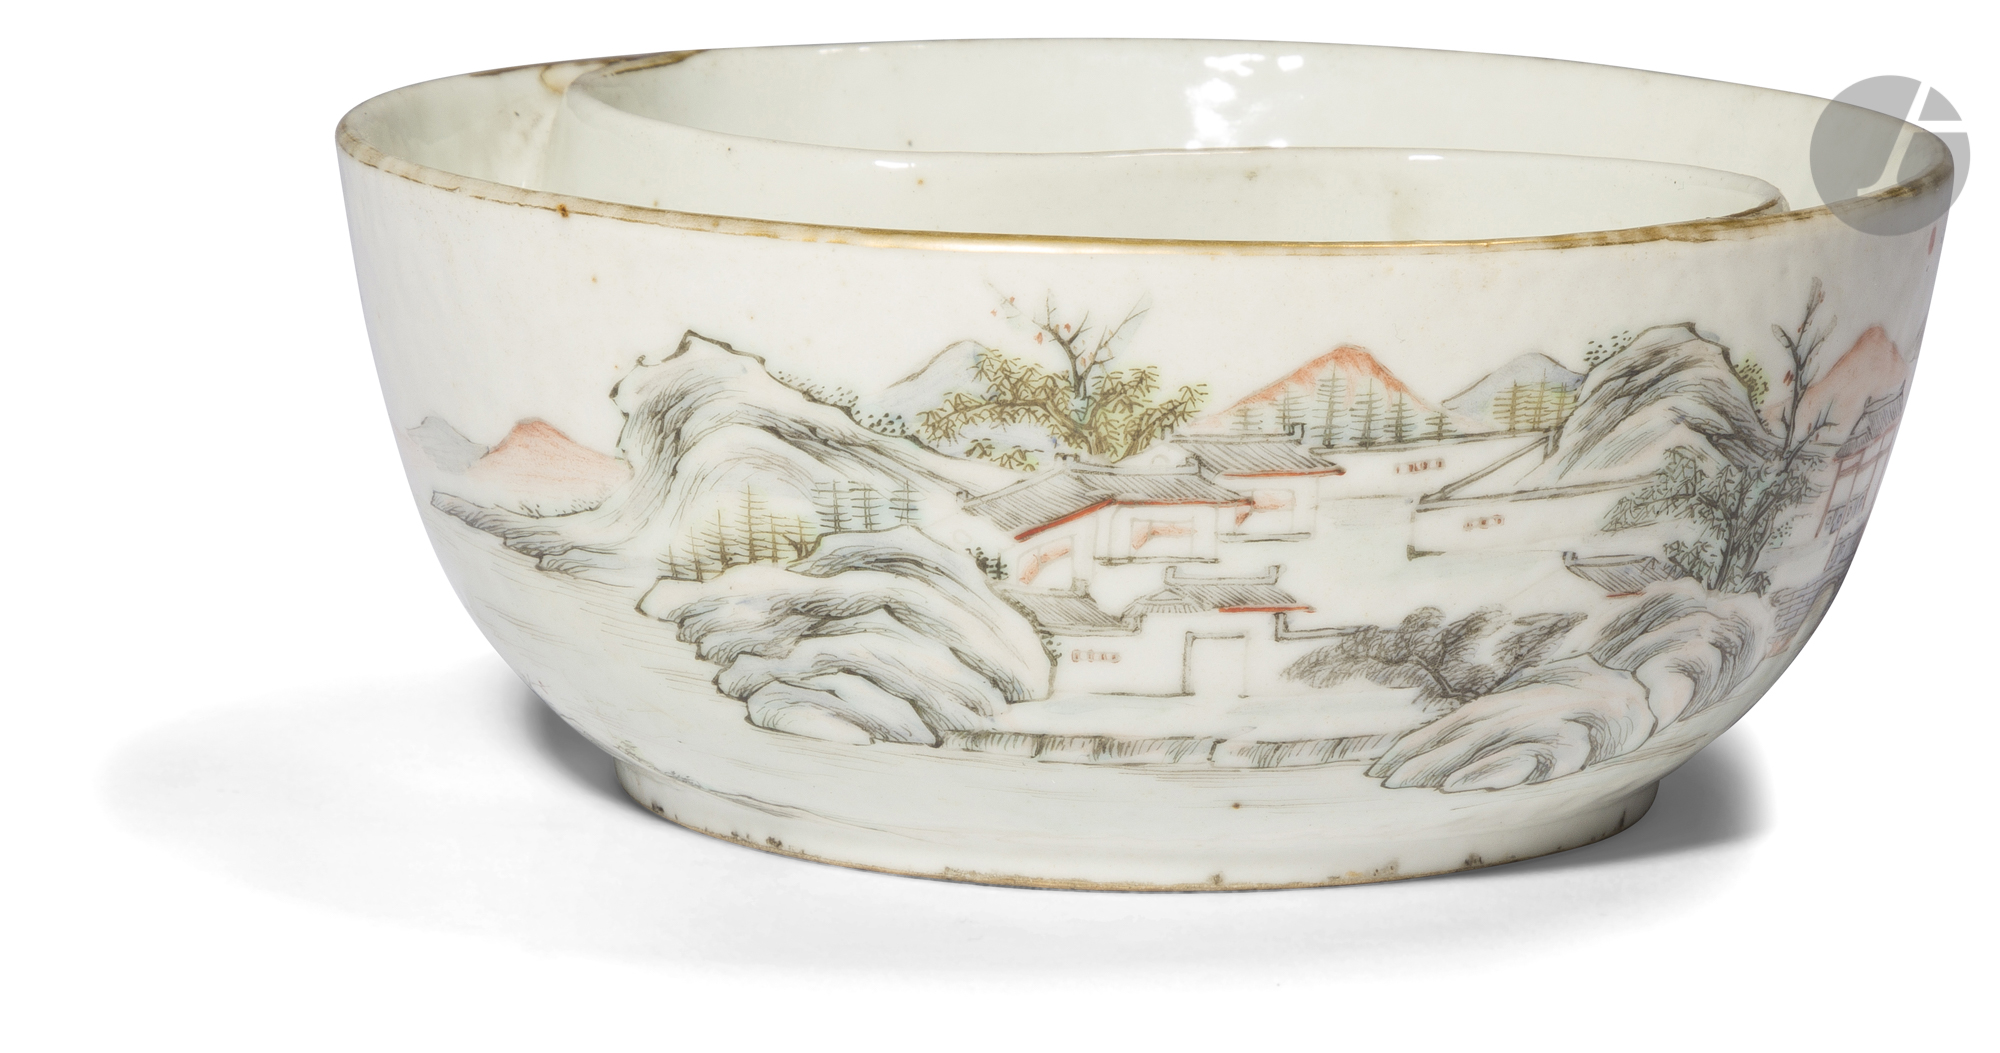 CHINE - XIXe siècle Coupe ronde à deux compartiments en porcelaine blanche émaillée polychrome et or